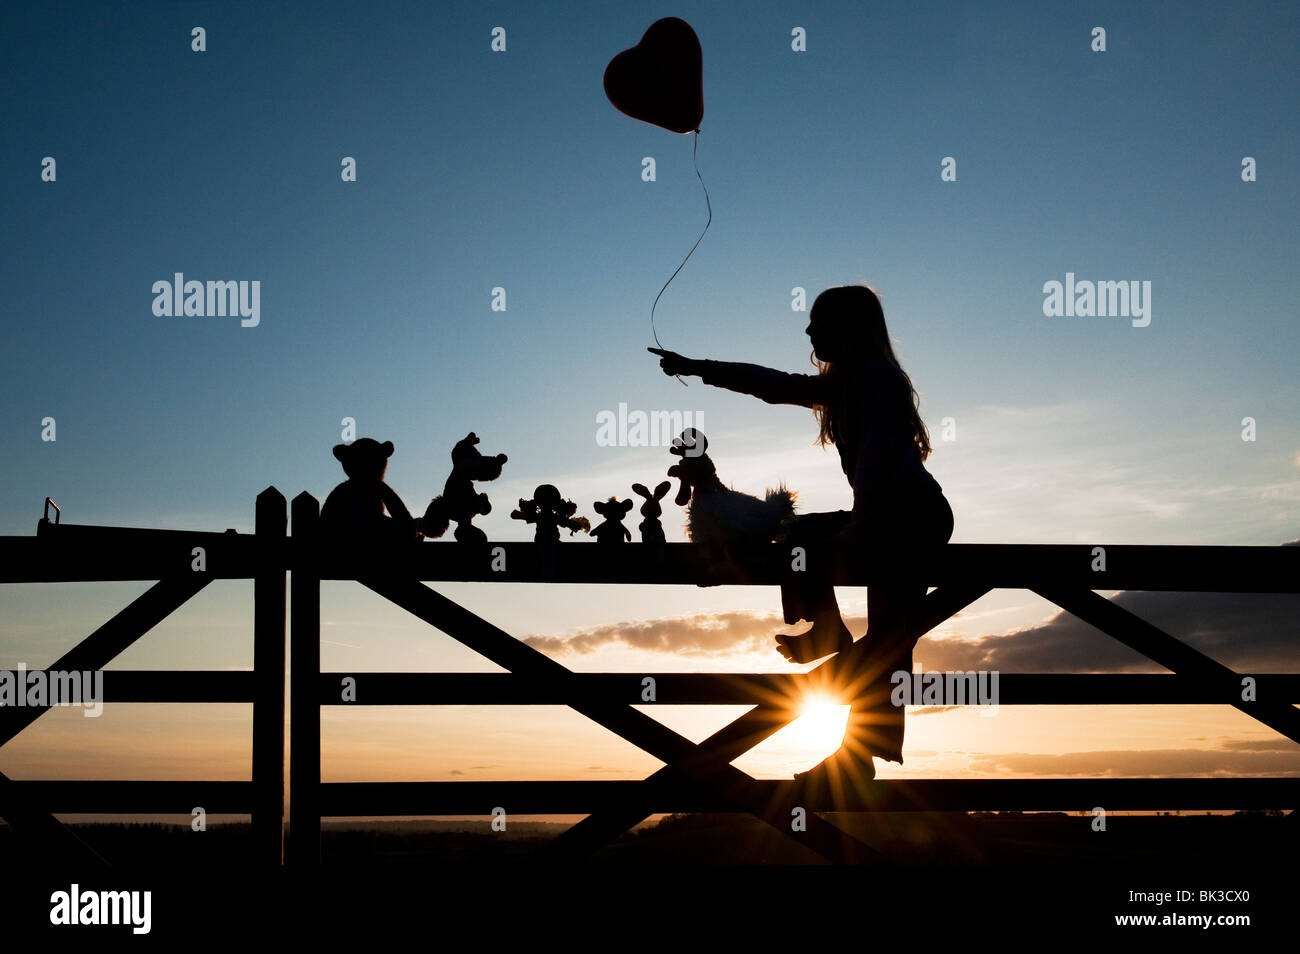 Girl holding a balloon avec une poupée de chiffon, poulet, lapin, renard et l'ours peluches assis sur une barrière au coucher du soleil. Silhouette Banque D'Images